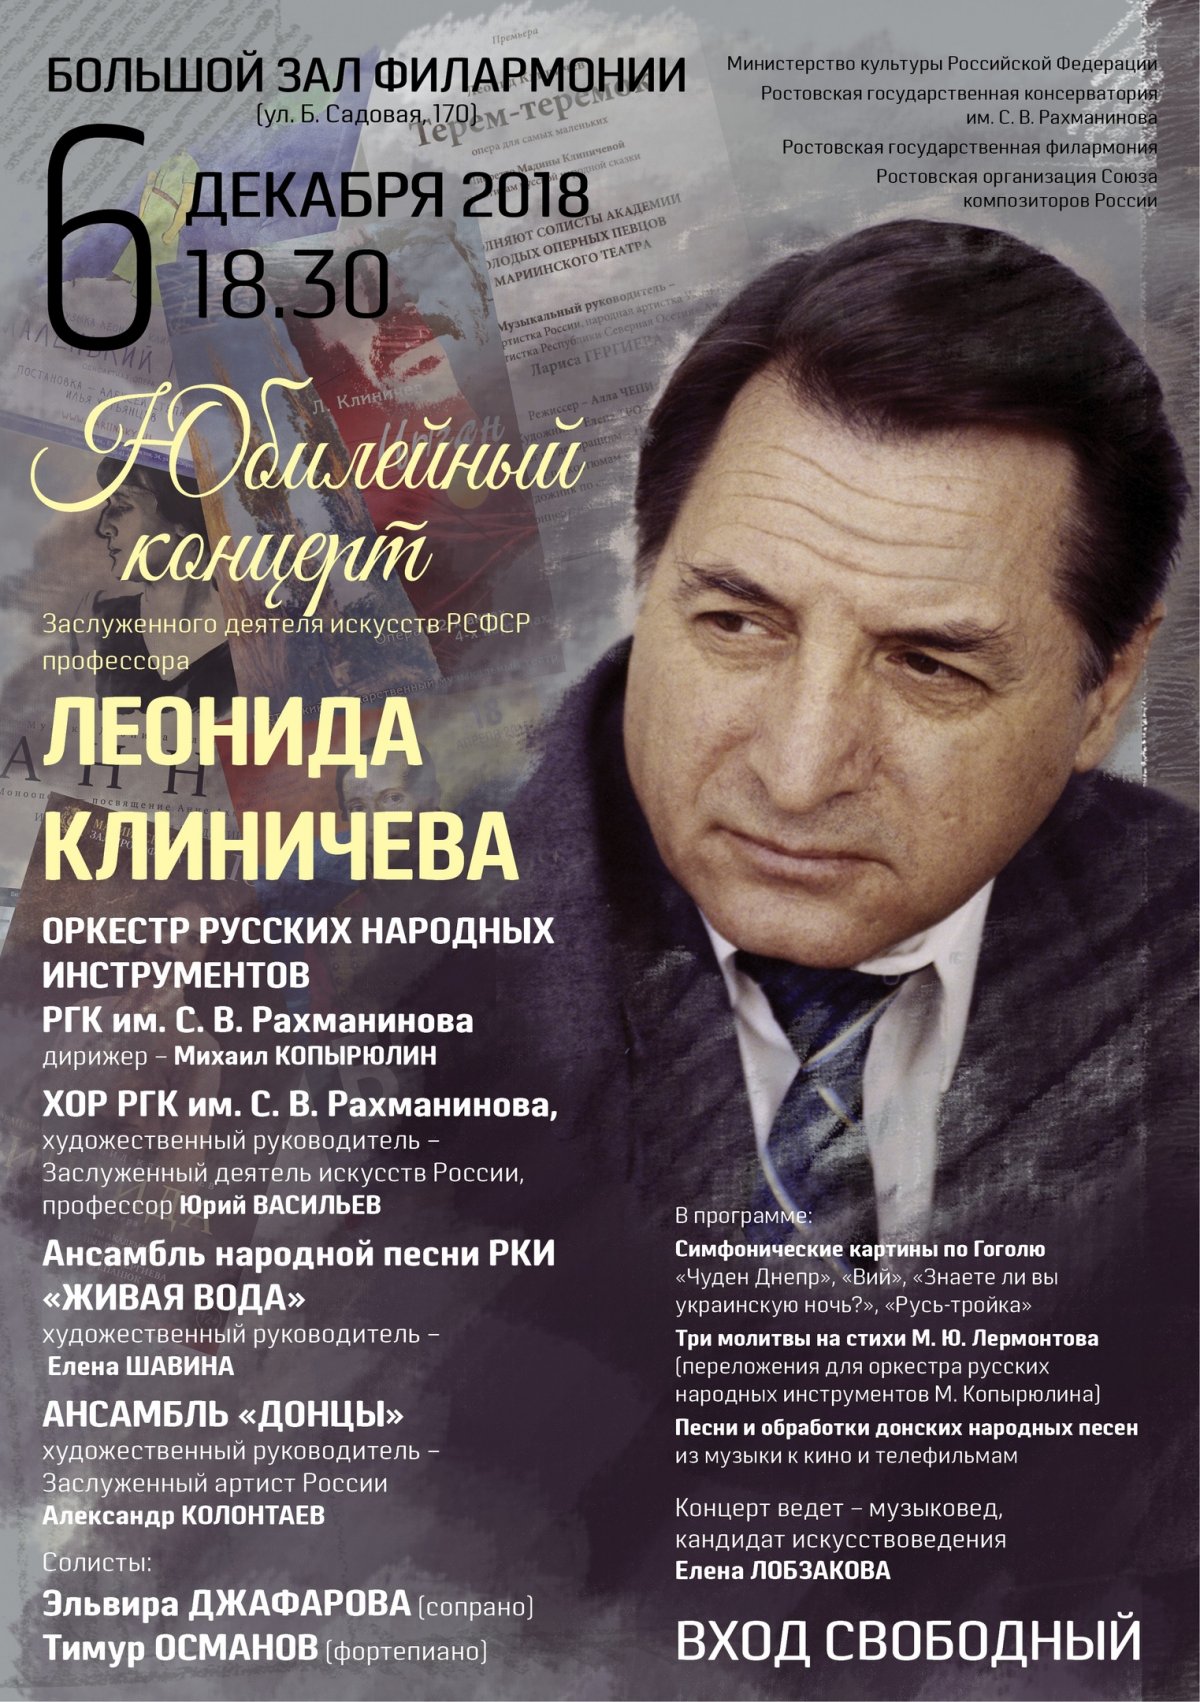 6 декабря в 18.30 в Большом зале Ростовской государственной филармонии (Ростовская филармония ) состоится юбилейный вечер заслуженного деятеля искусств РСФСР